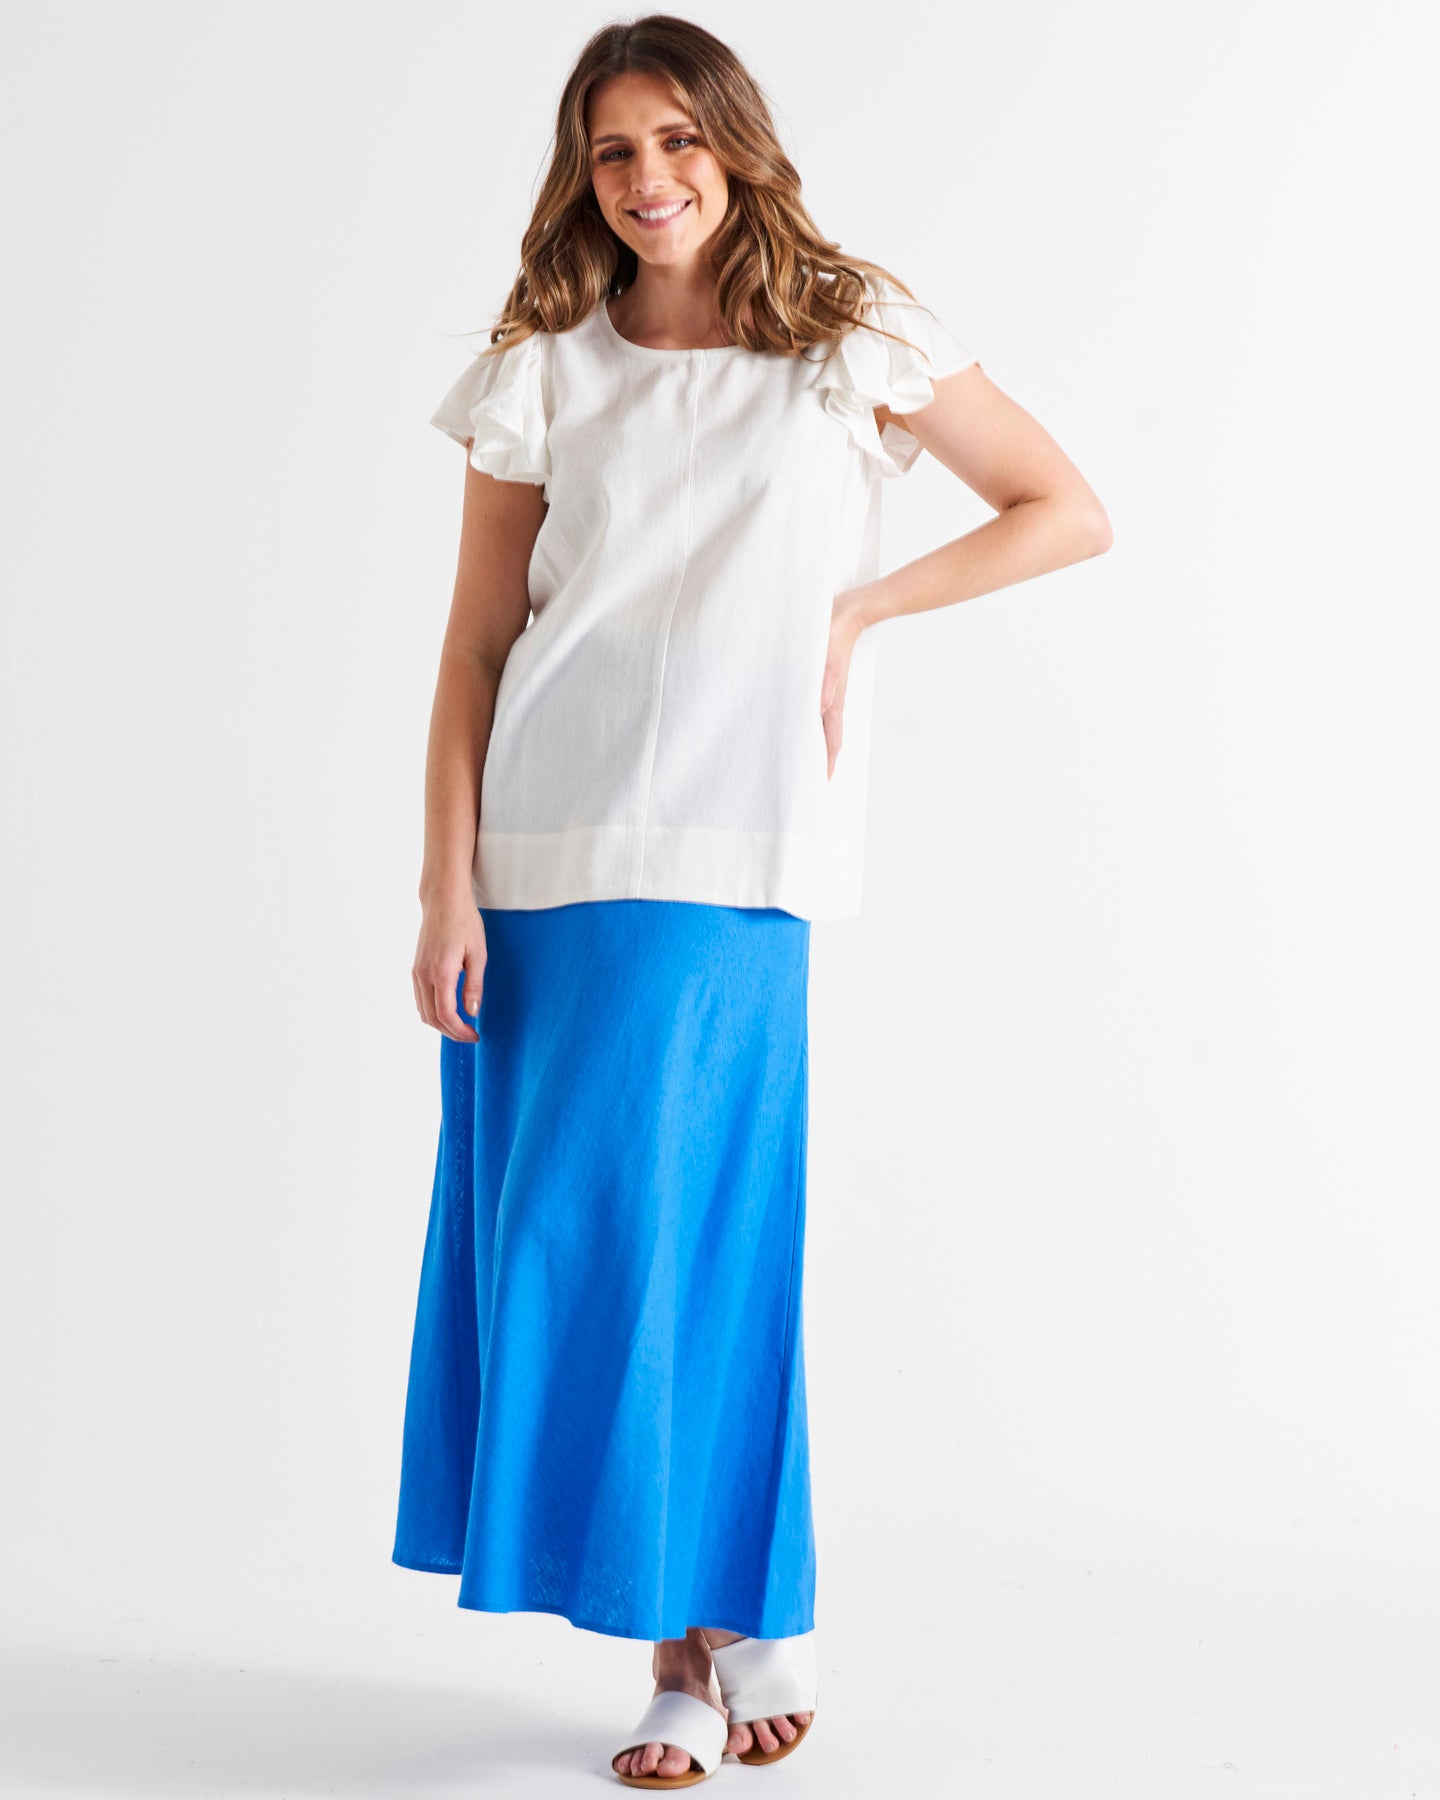 Saffron High Waist Midi Linen-Blend Side Split Skirt - Electric Blue